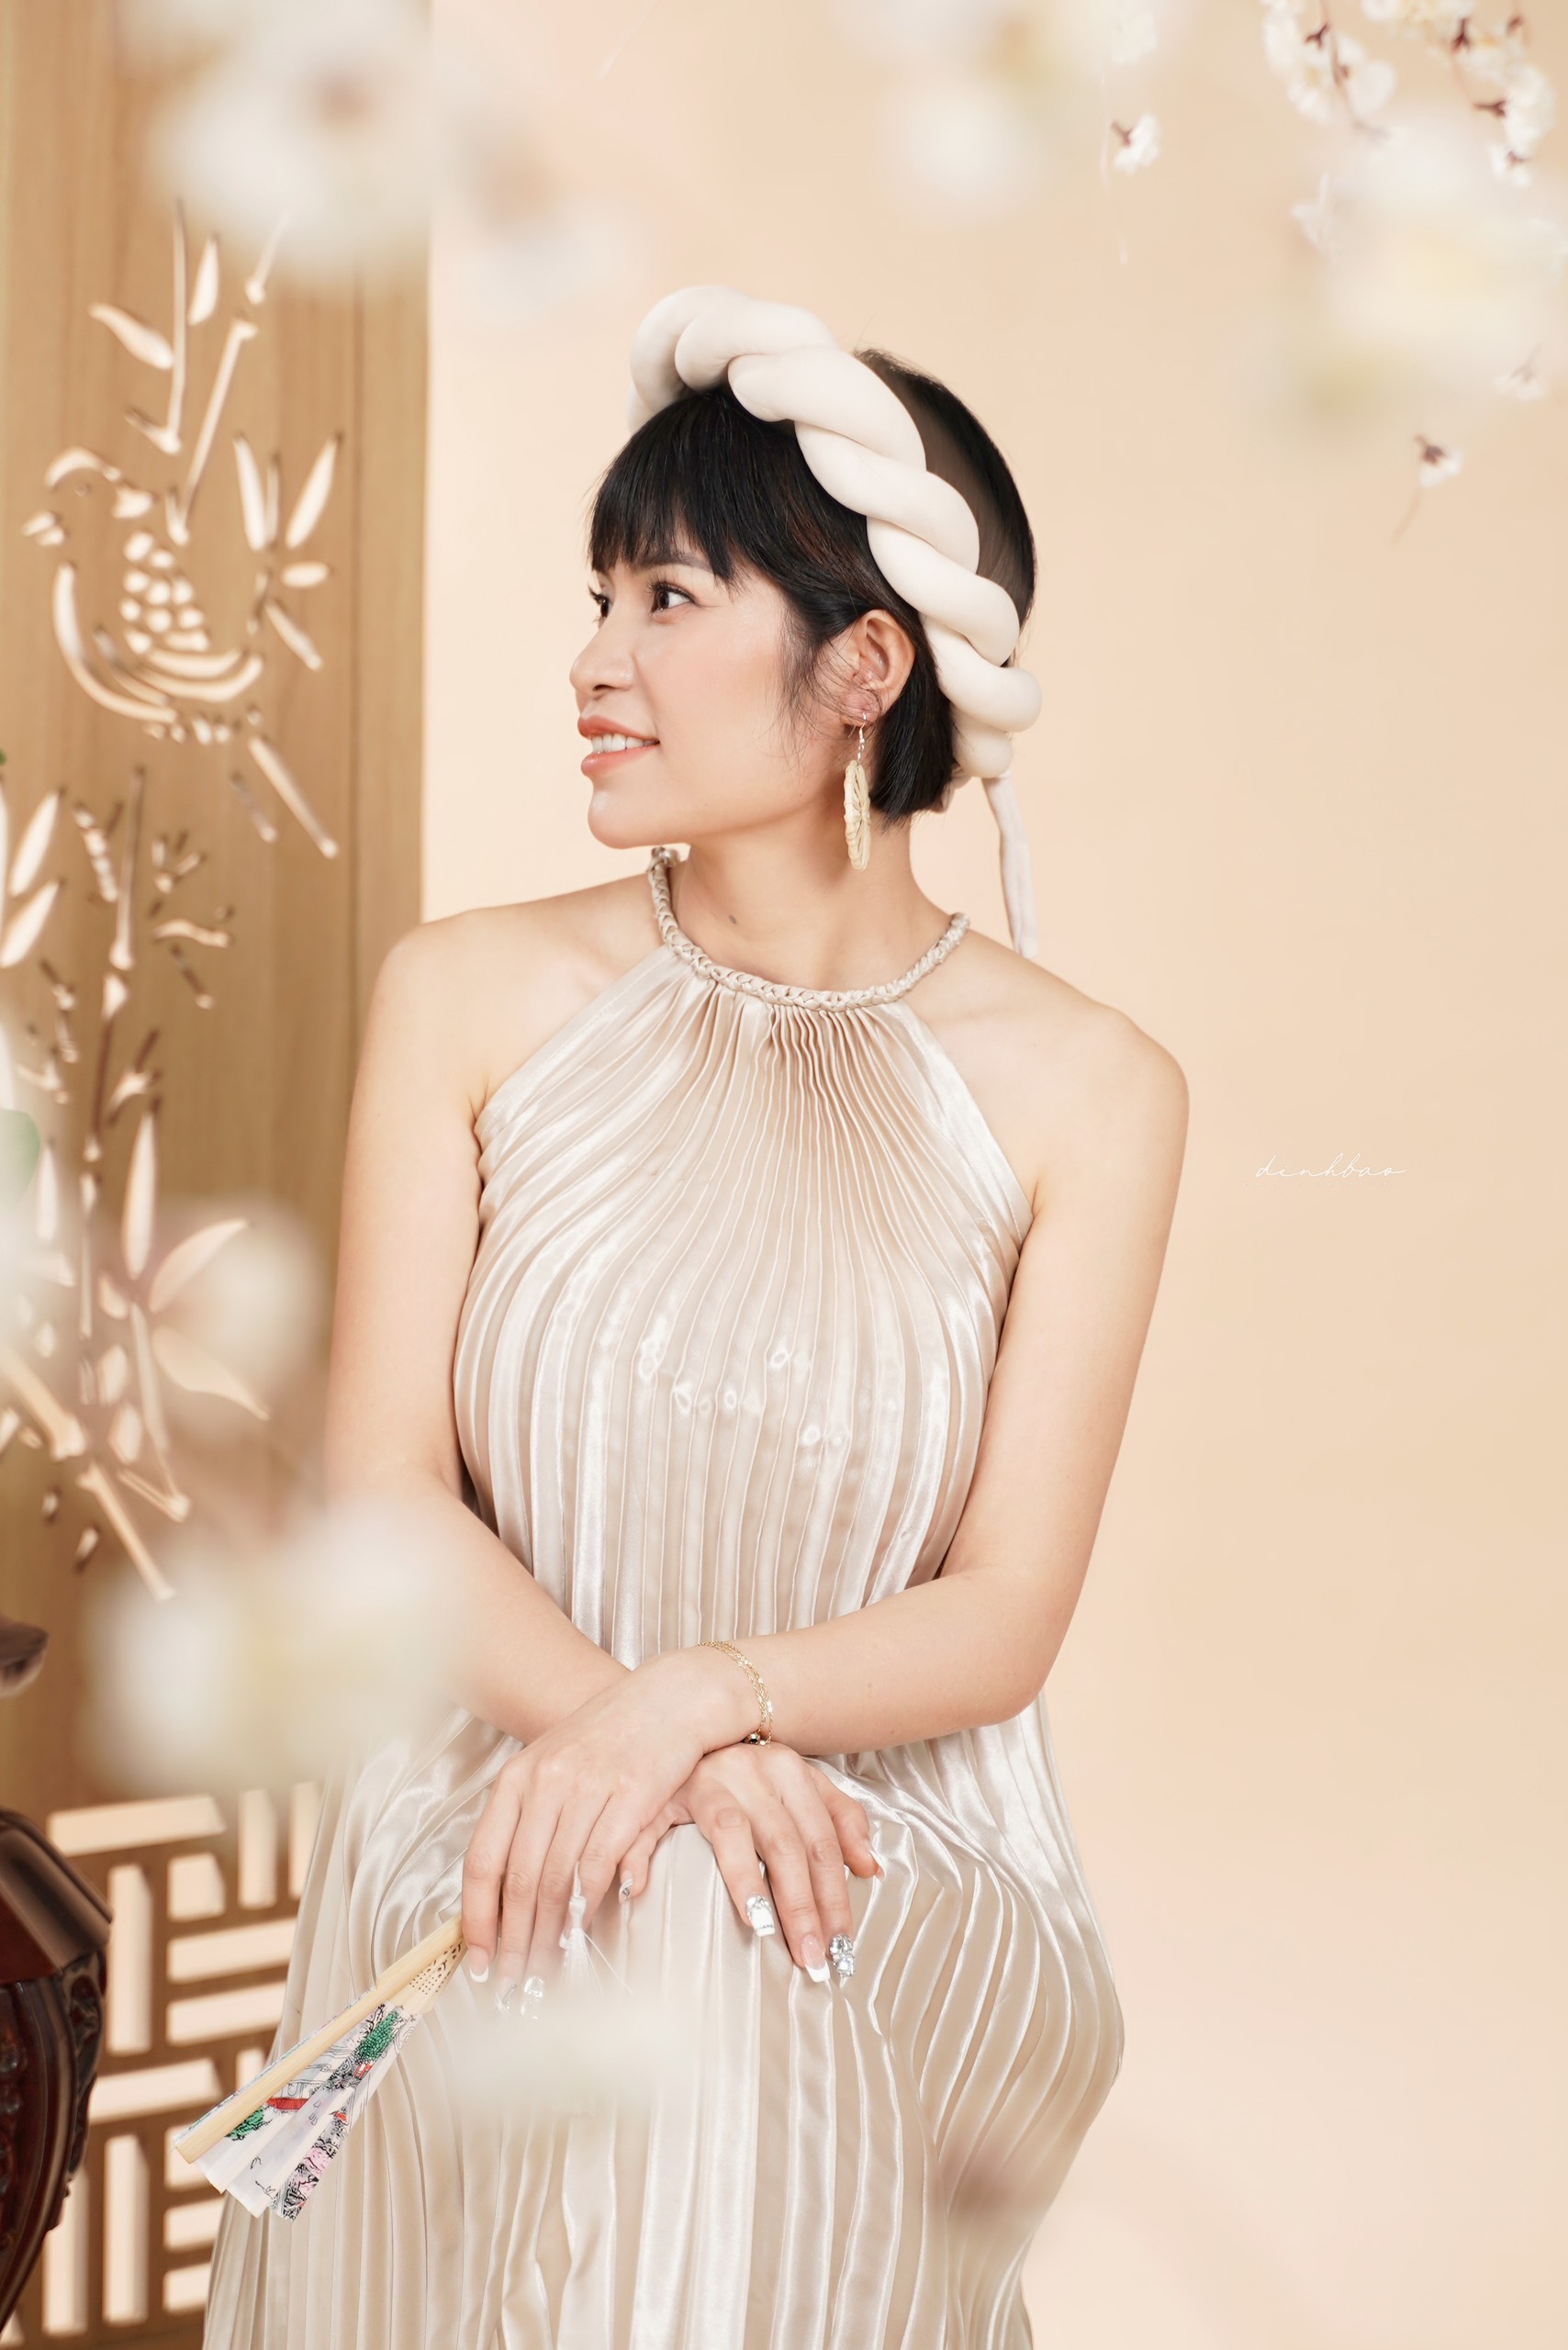 Anna Khánh Miền Beauty & Academy – Phun xăm thẩm mỹ – điều trị da khoa học nổi tiếng tại Bảo Lộc – Lâm Đồng.